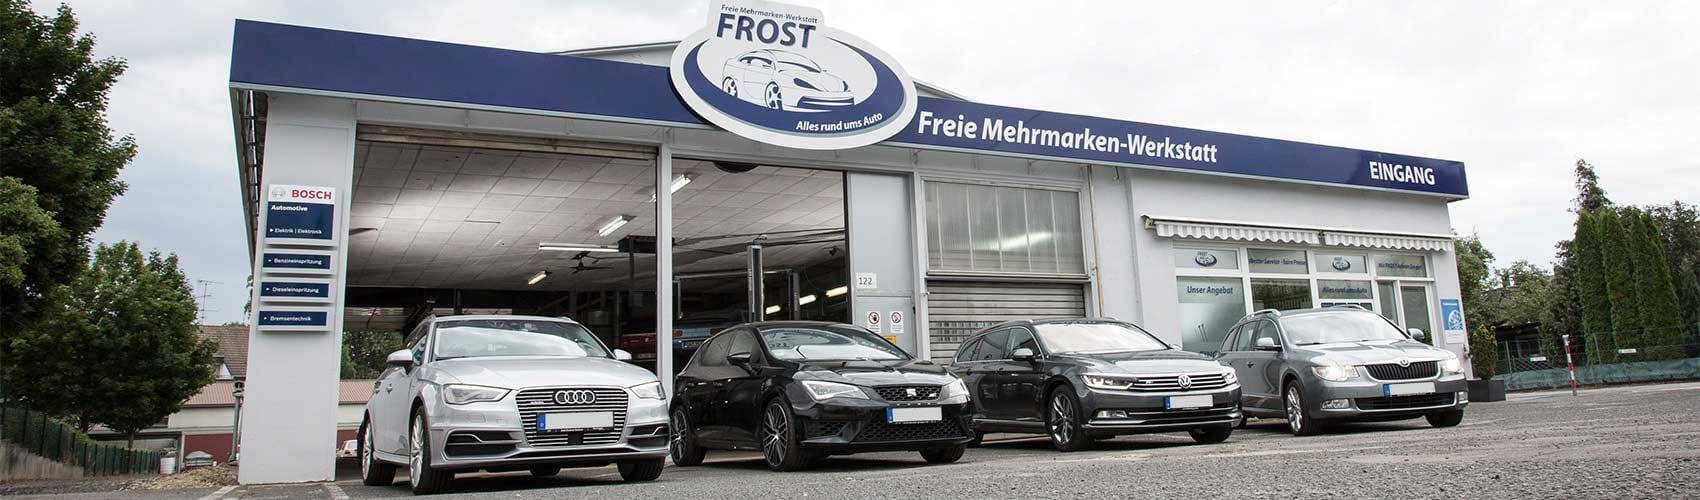 Autoservice FROST - Autowerkstatt und KFZ-Werkstatt in Düren